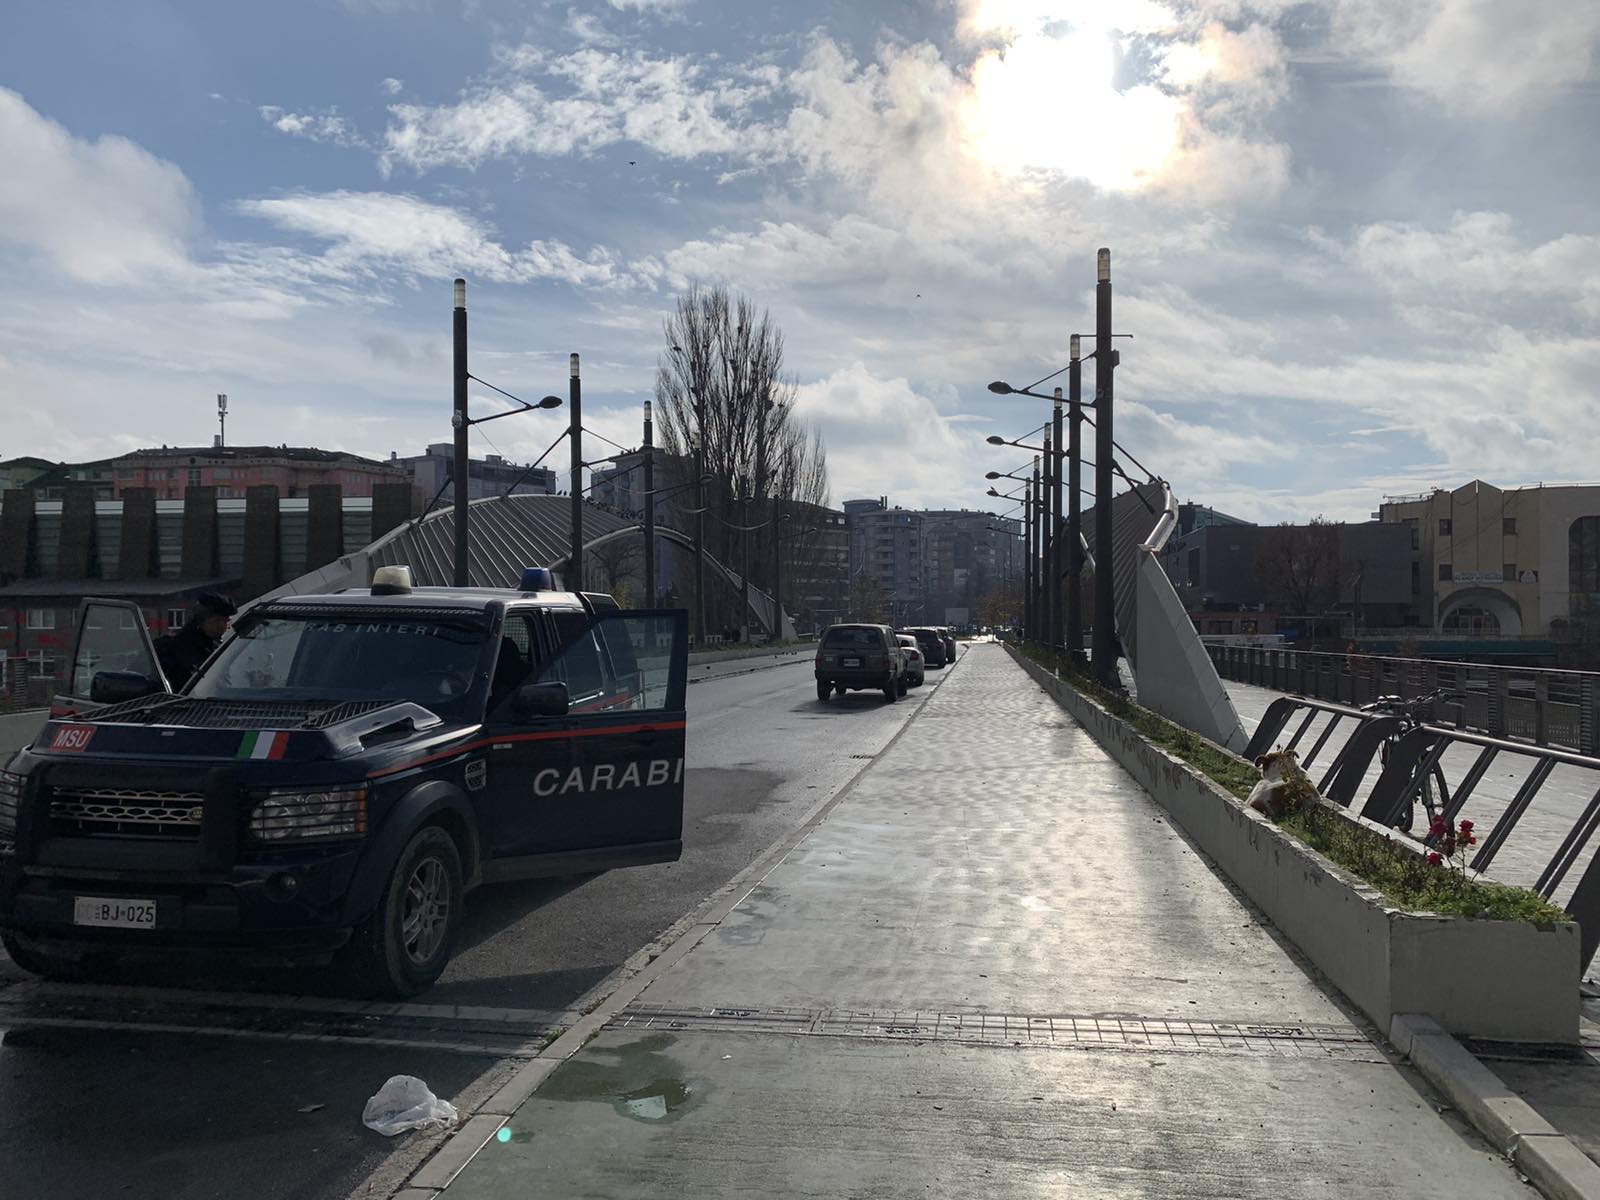 Humolli: Ende sot jemi duke u marrë me Urën e Ibrit brenda Kosovës me pyet Serbinë a e hapim apo jo